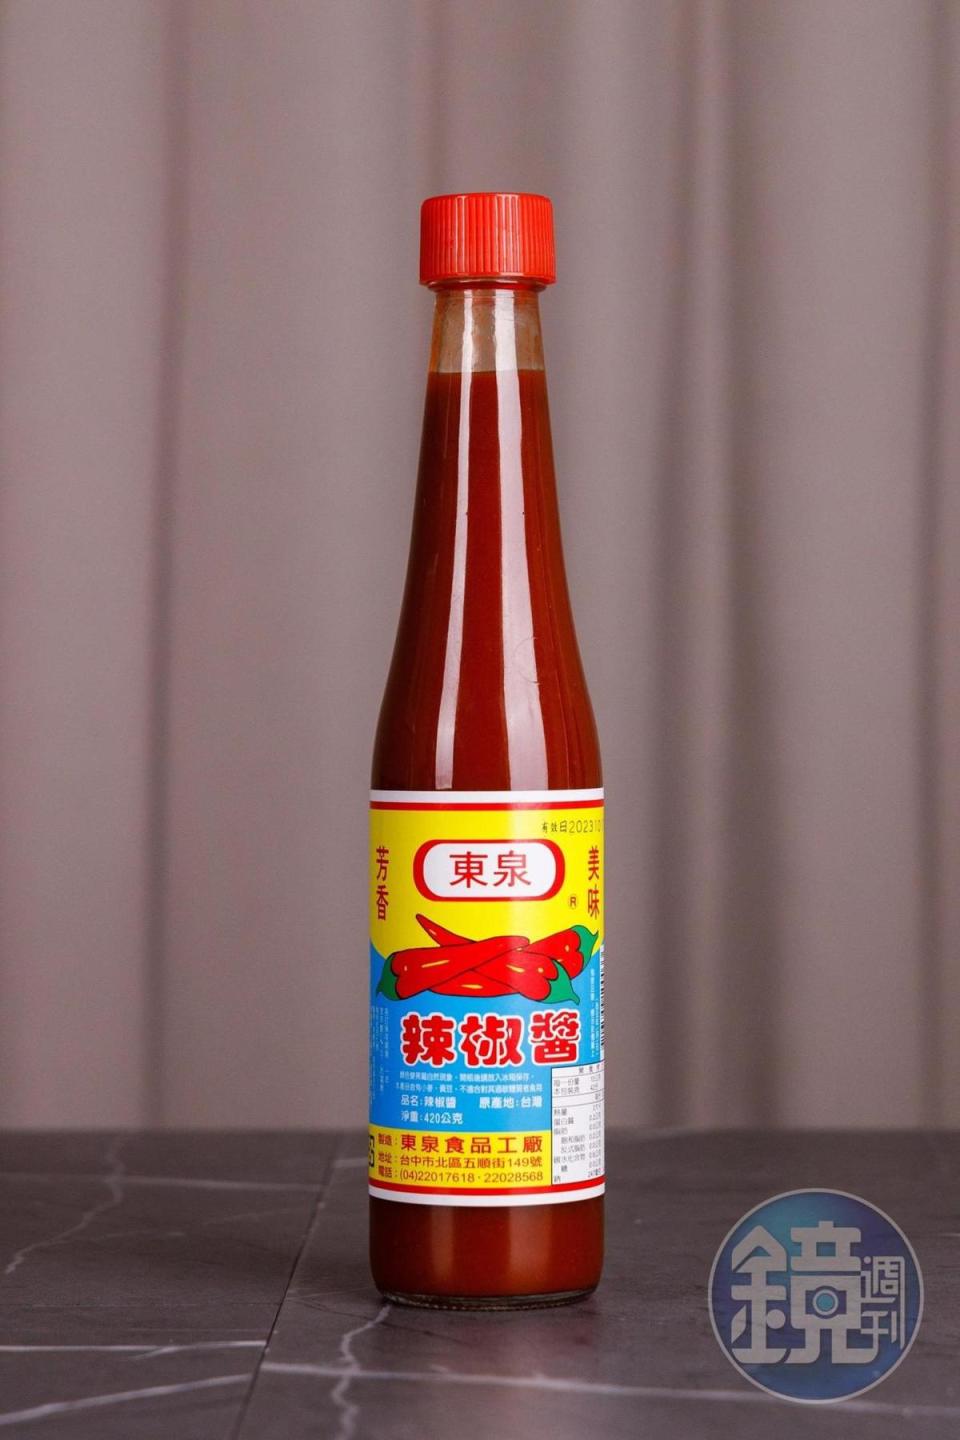 東泉辣椒醬就是台中小吃的靈魂。